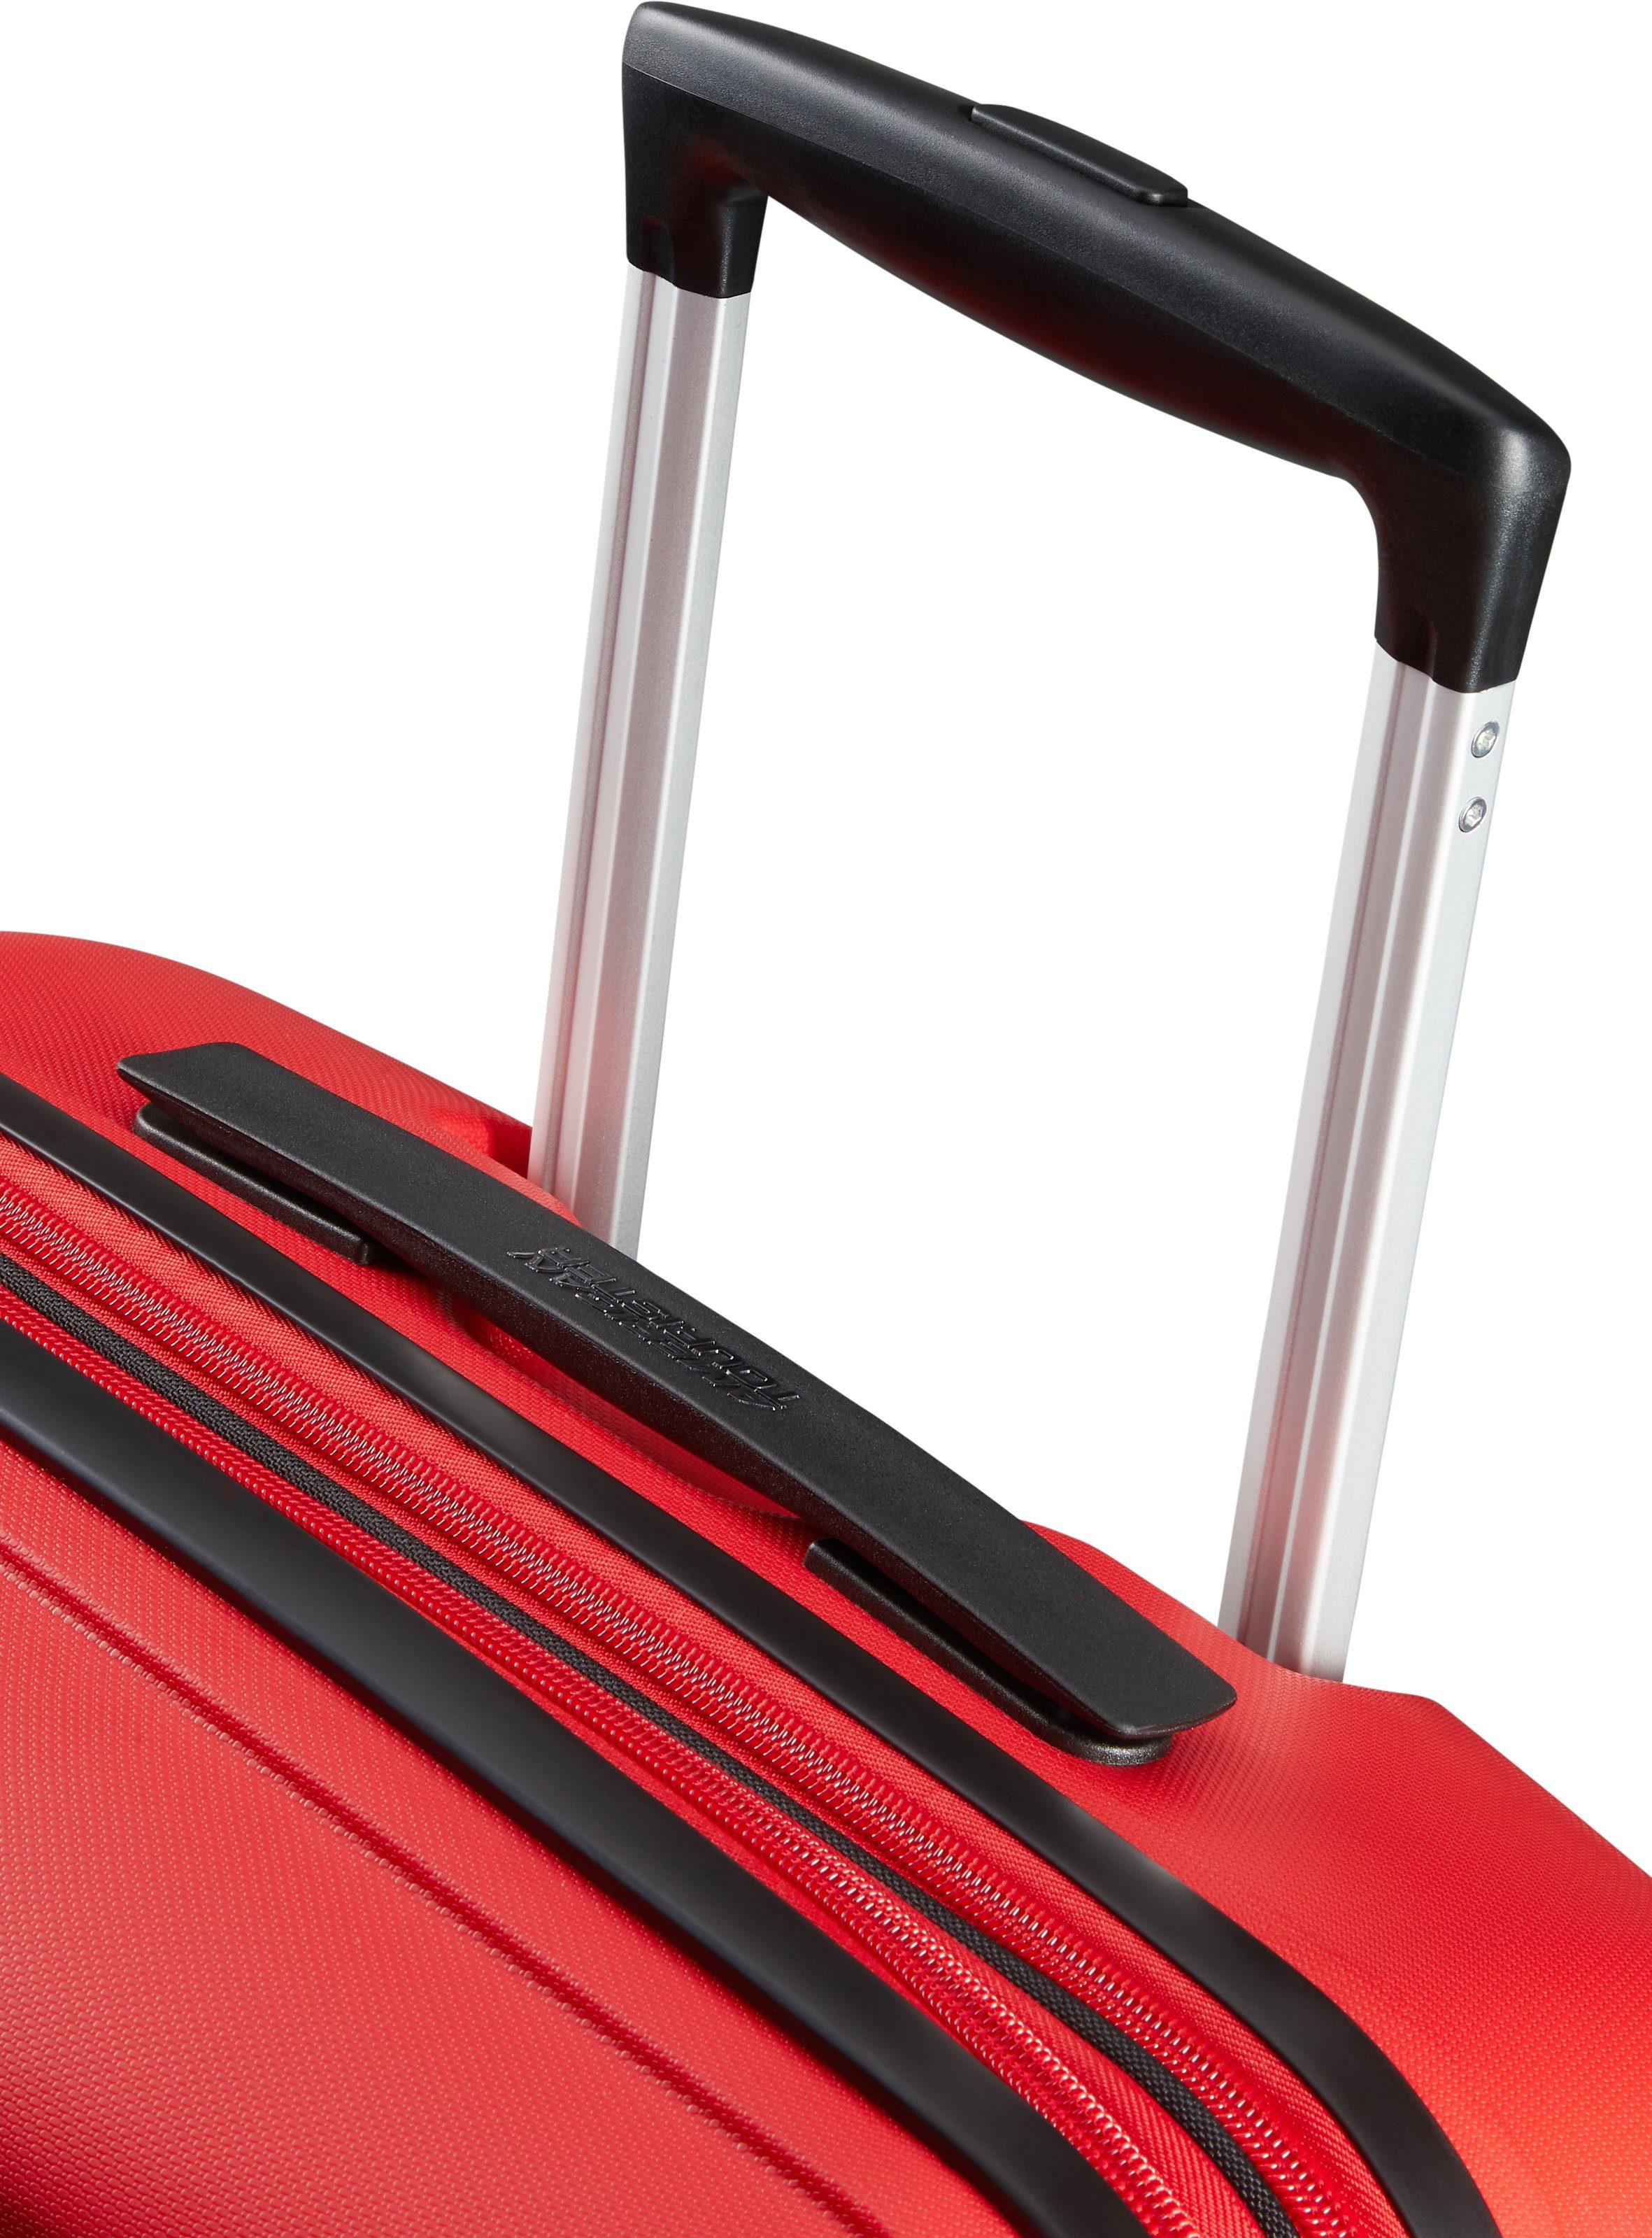 American Tourister® Hartschalen-Trolley Air Bon 4 DLX, Volumenerweiterung Rollen, 66 Red Magma mit cm